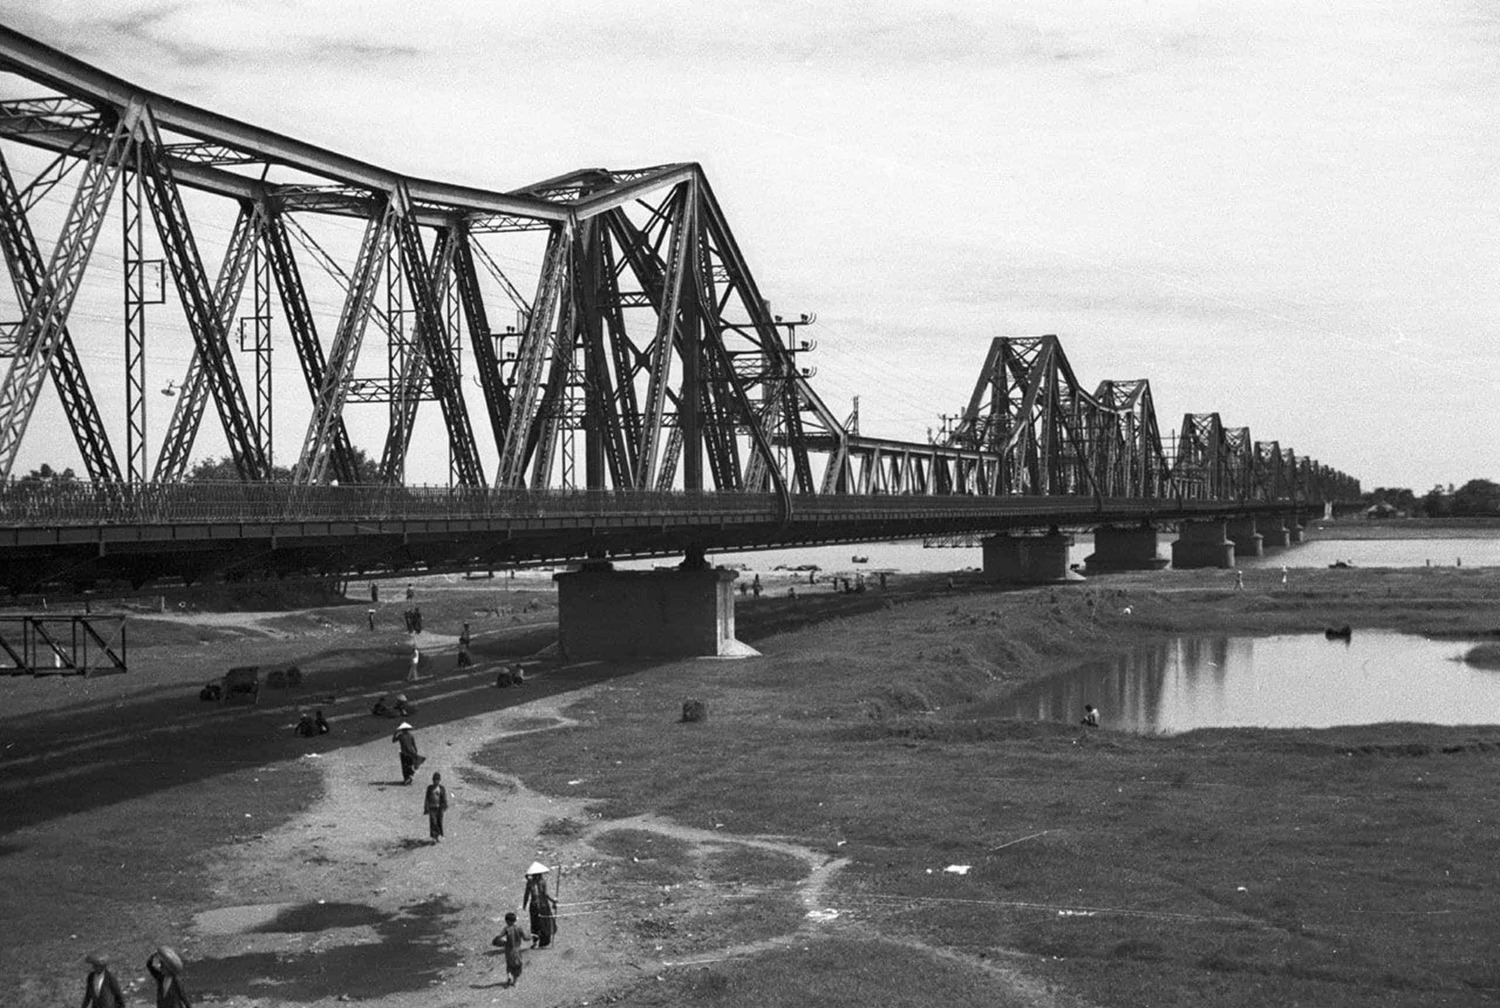 Khám phá cầu Long Biên - Biểu tượng văn hóa, lịch sử của Hà Nội 4